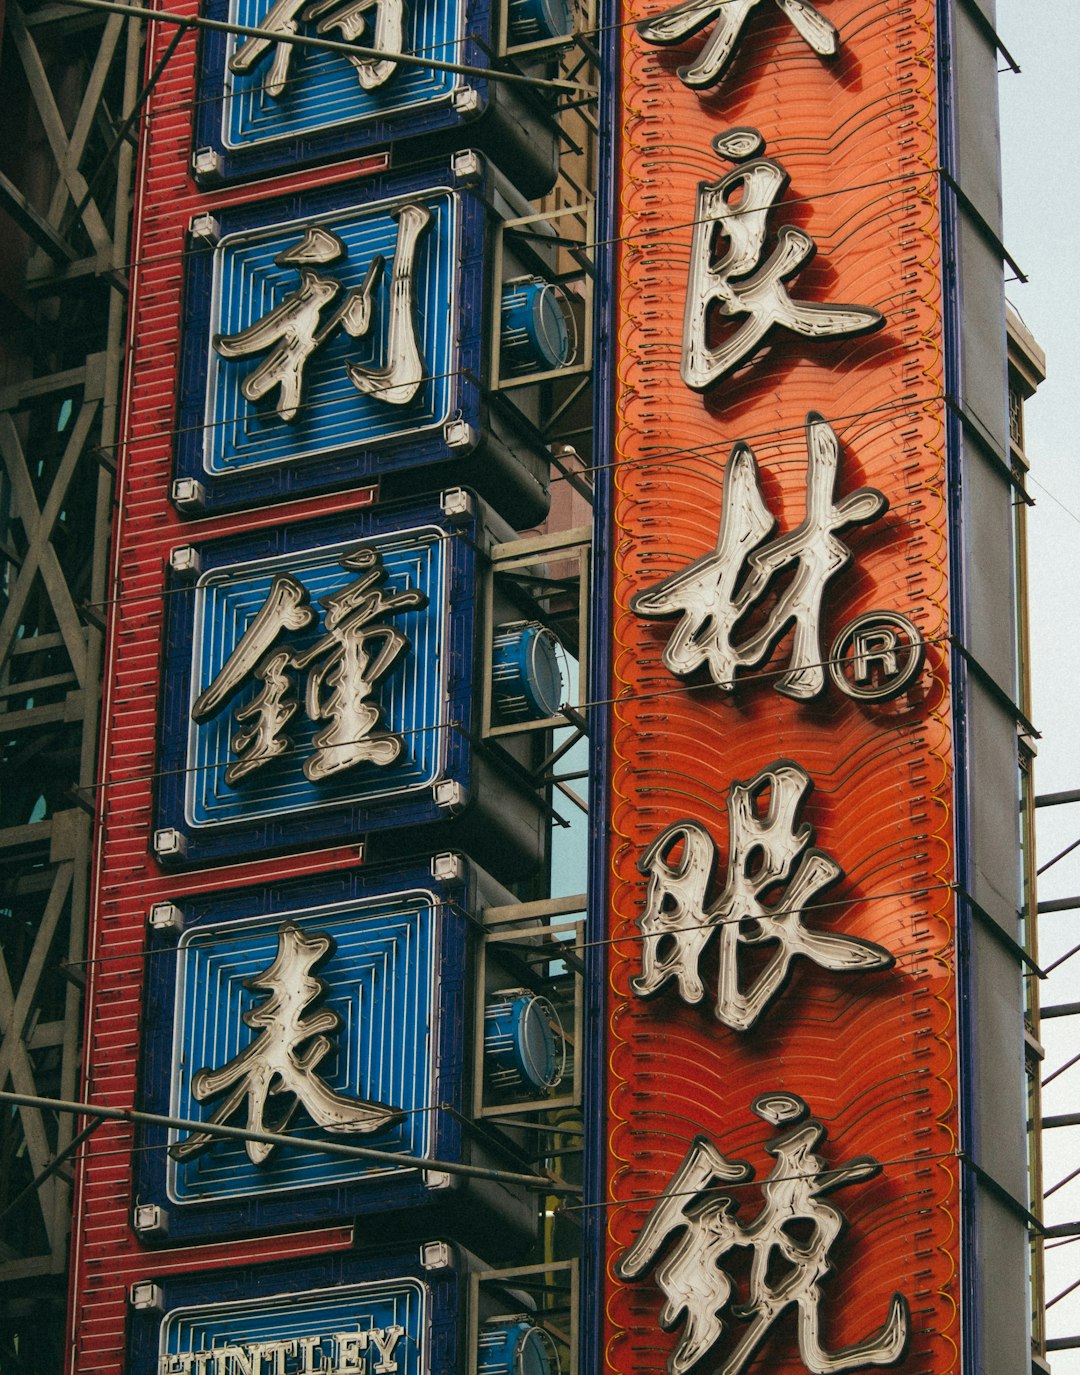 kanji text signage